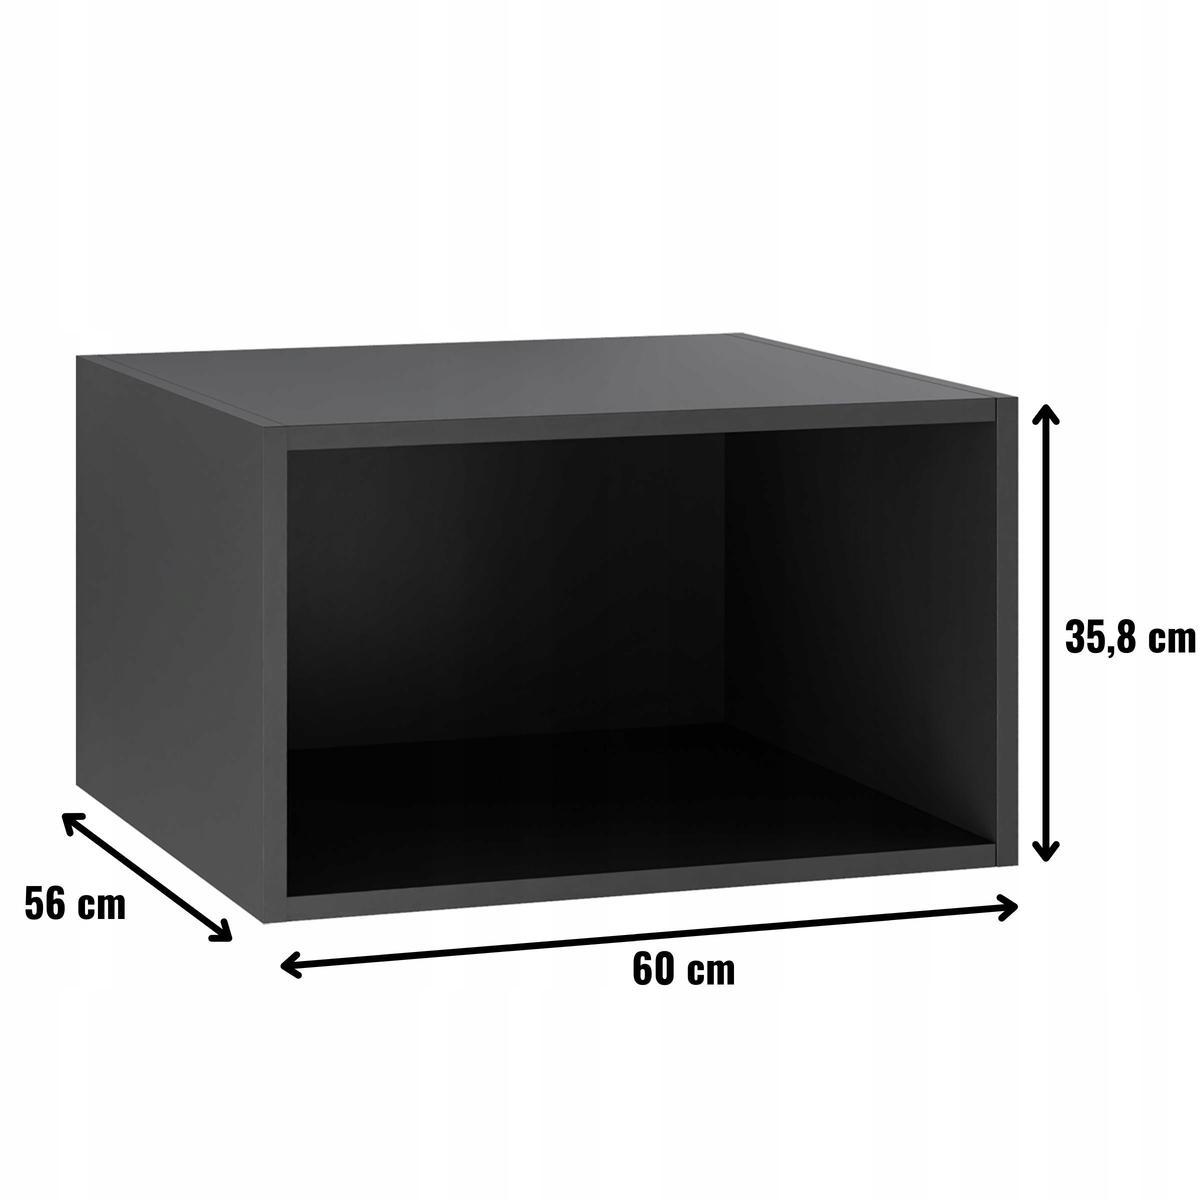 Korpus szafka kuchenna górna okapowa głęboka 60x36x56 cm z akcesoriami czarny nr. 2